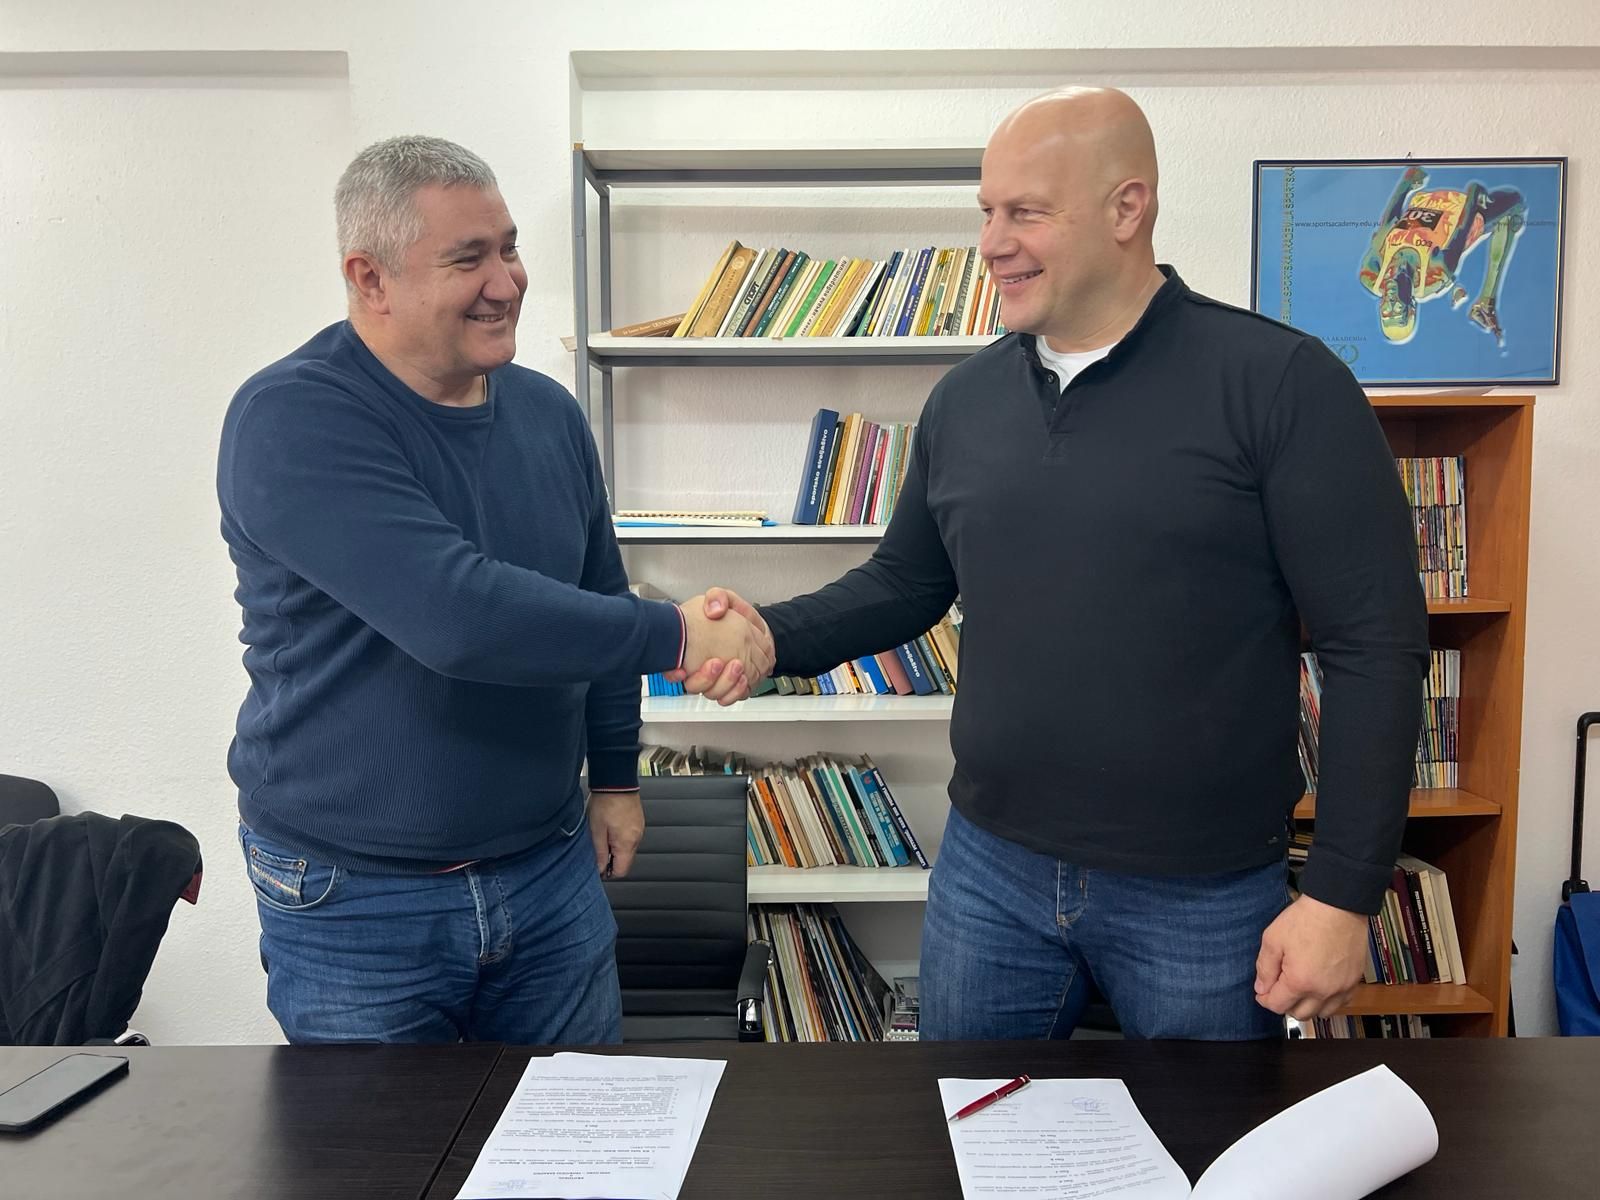 Potpisan protokol o saradnji Kik boks saveza Srbije i Sportske akademije iz Beograda